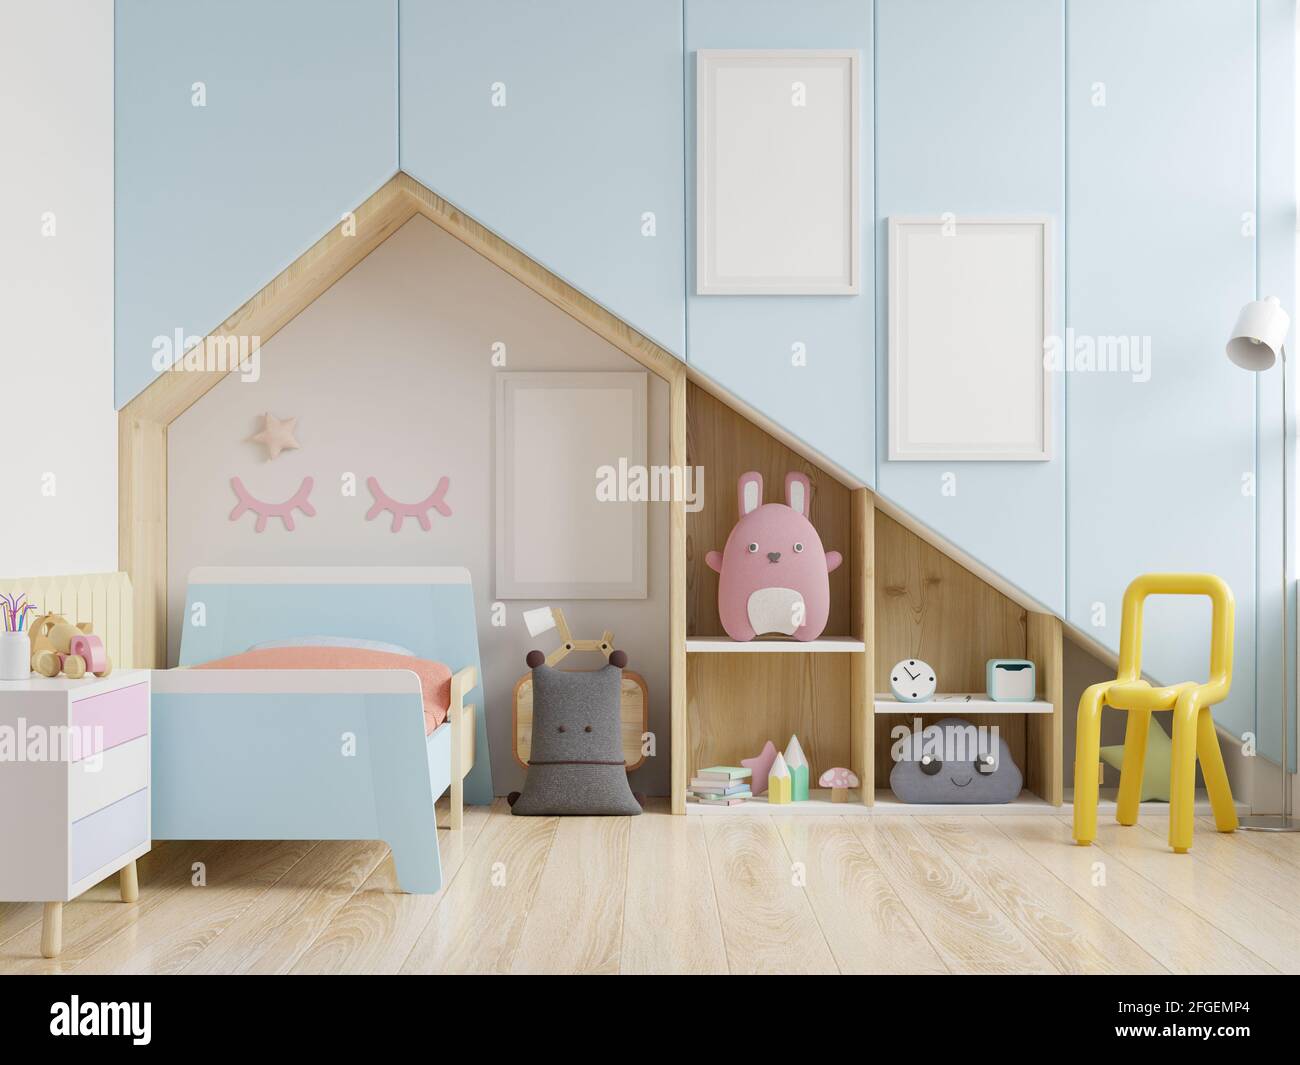 Chambre des enfants avec toit et murs bleus/affiche maquette cadre dans la chambre des enfants, rendu 3d Banque D'Images